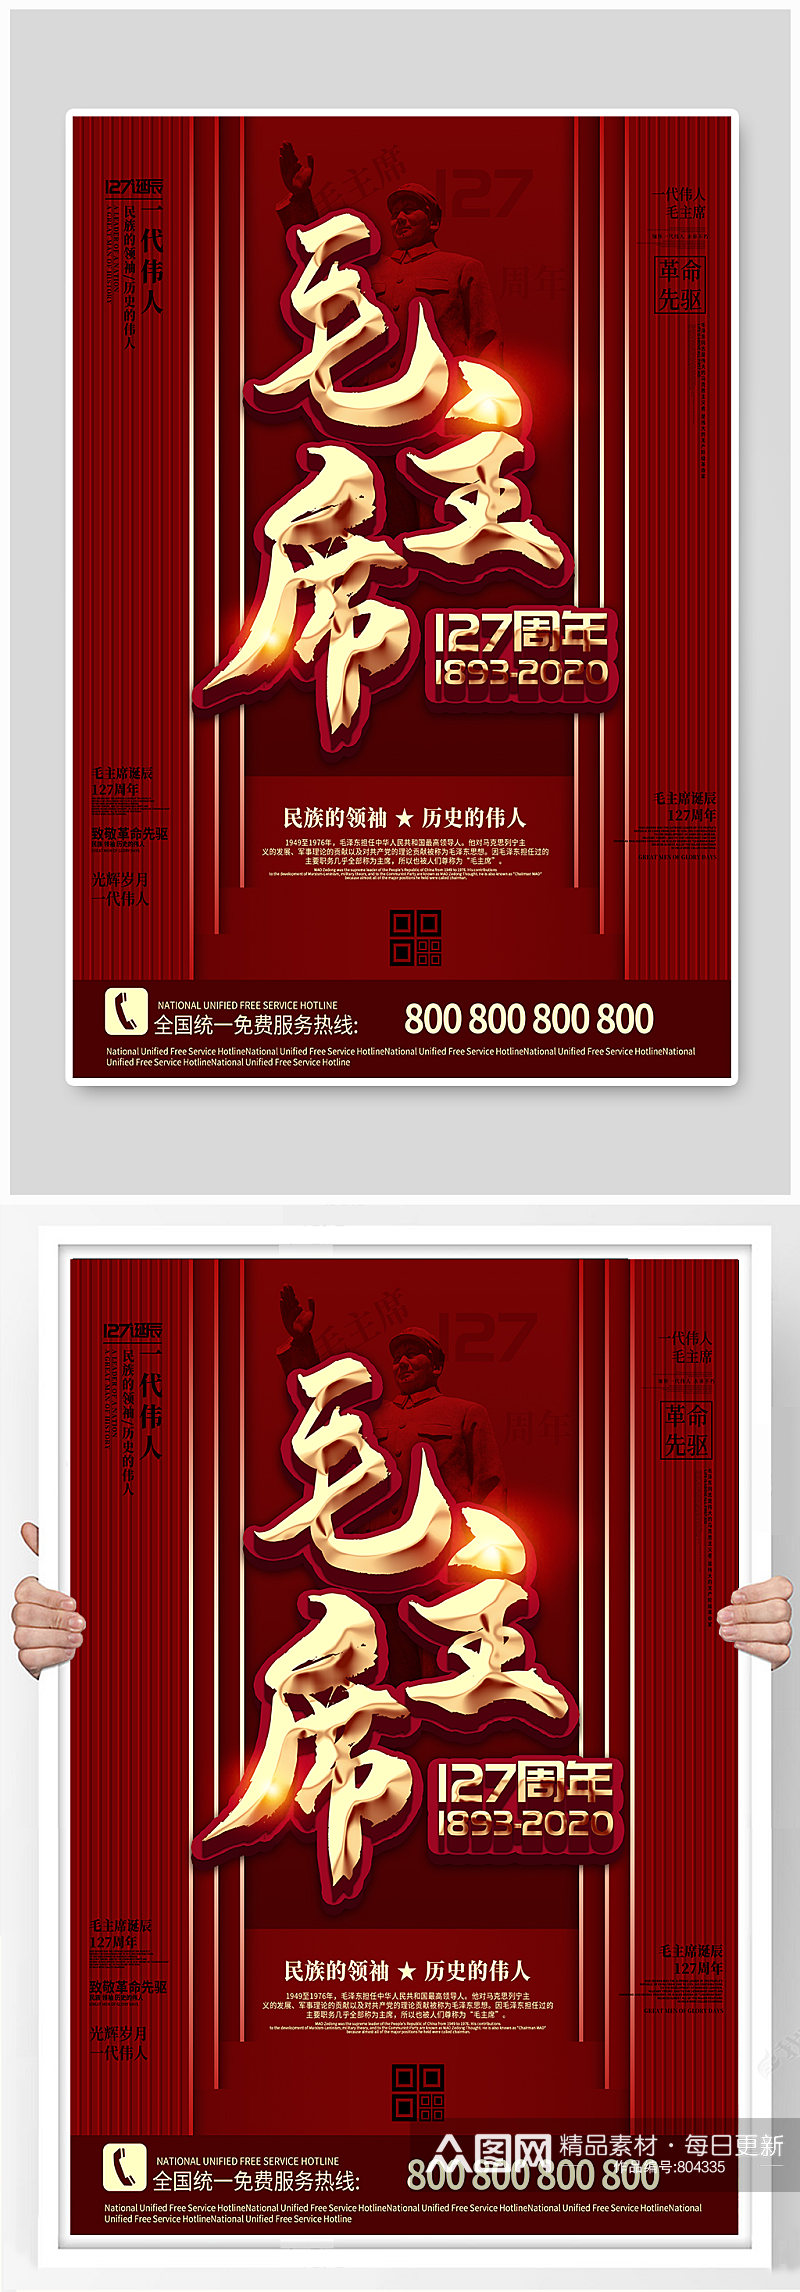 伟大领袖毛主席诞辰127周年海报素材